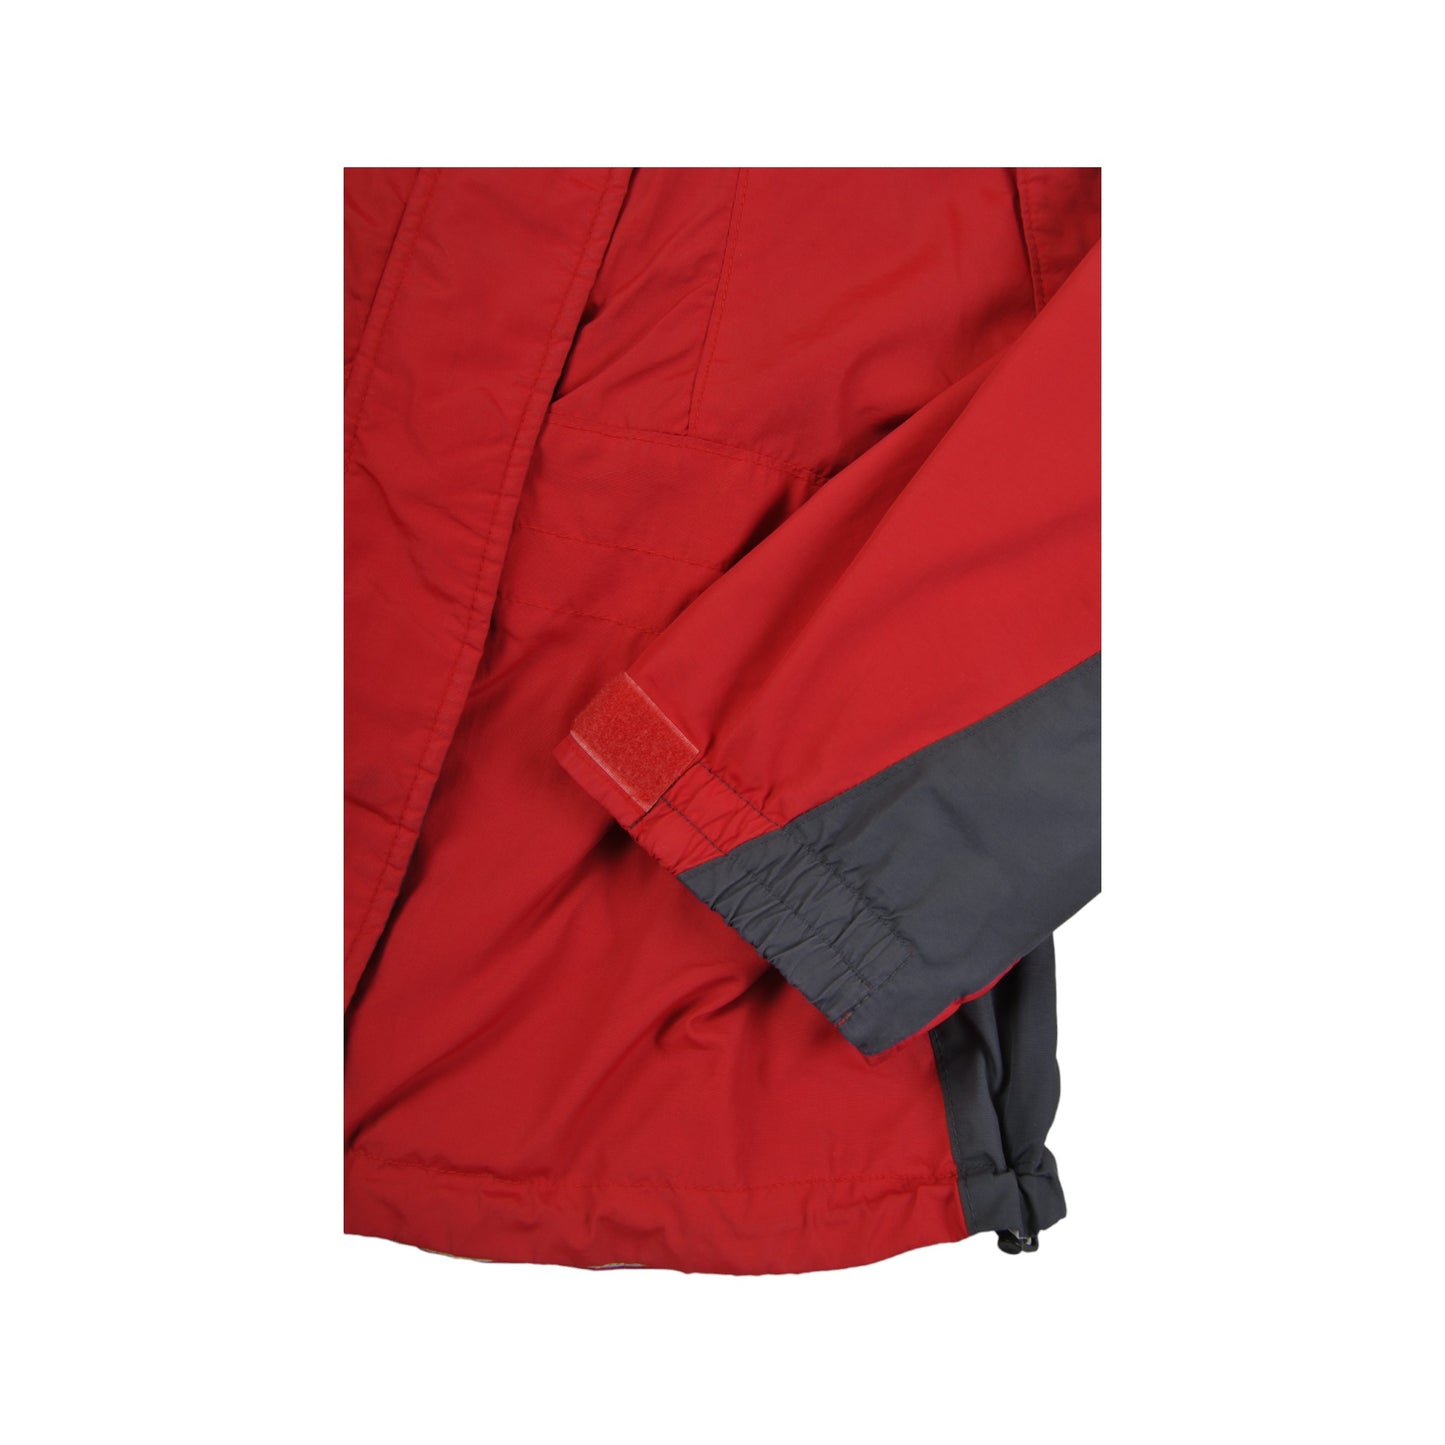 Vintage Columbia Jacket Waterproof Red/Grey Ladies XL